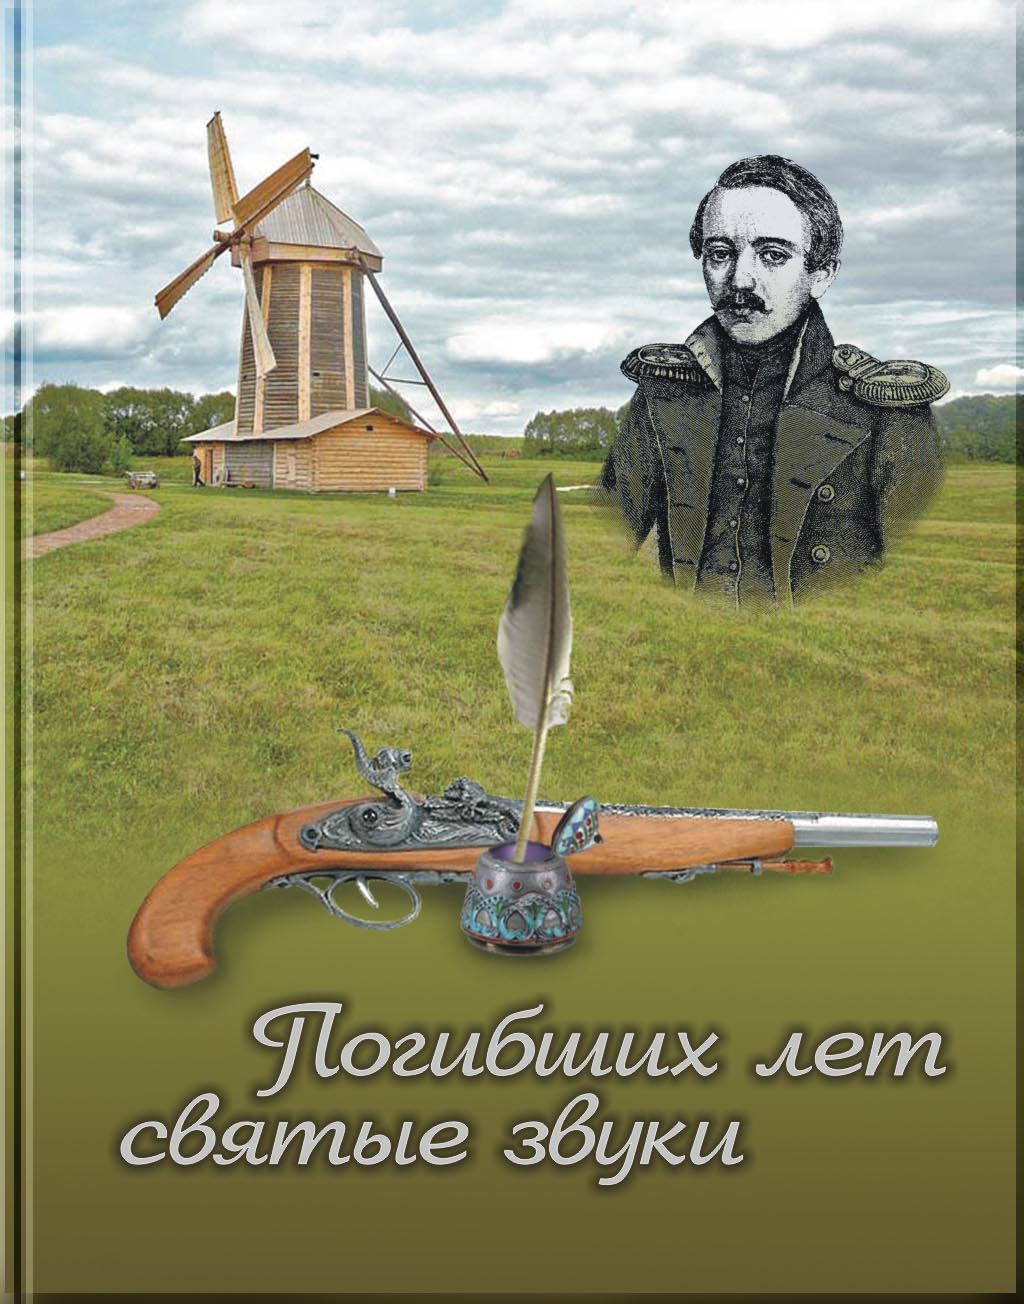 Обложка книги о М.Ю.Лермонтове